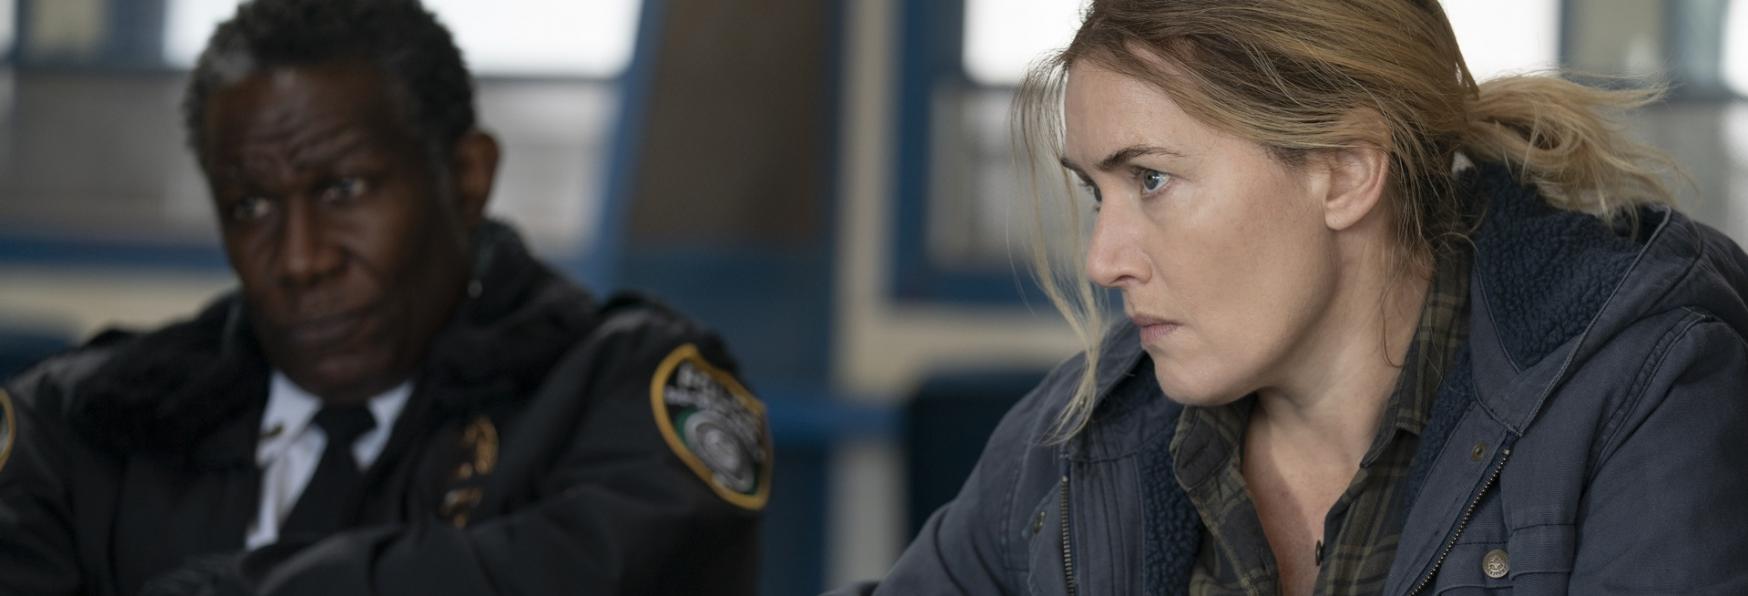 Omicidio a Easttown: Recensione Senza Spoiler dell'Avvincente Serie TV targata HBO